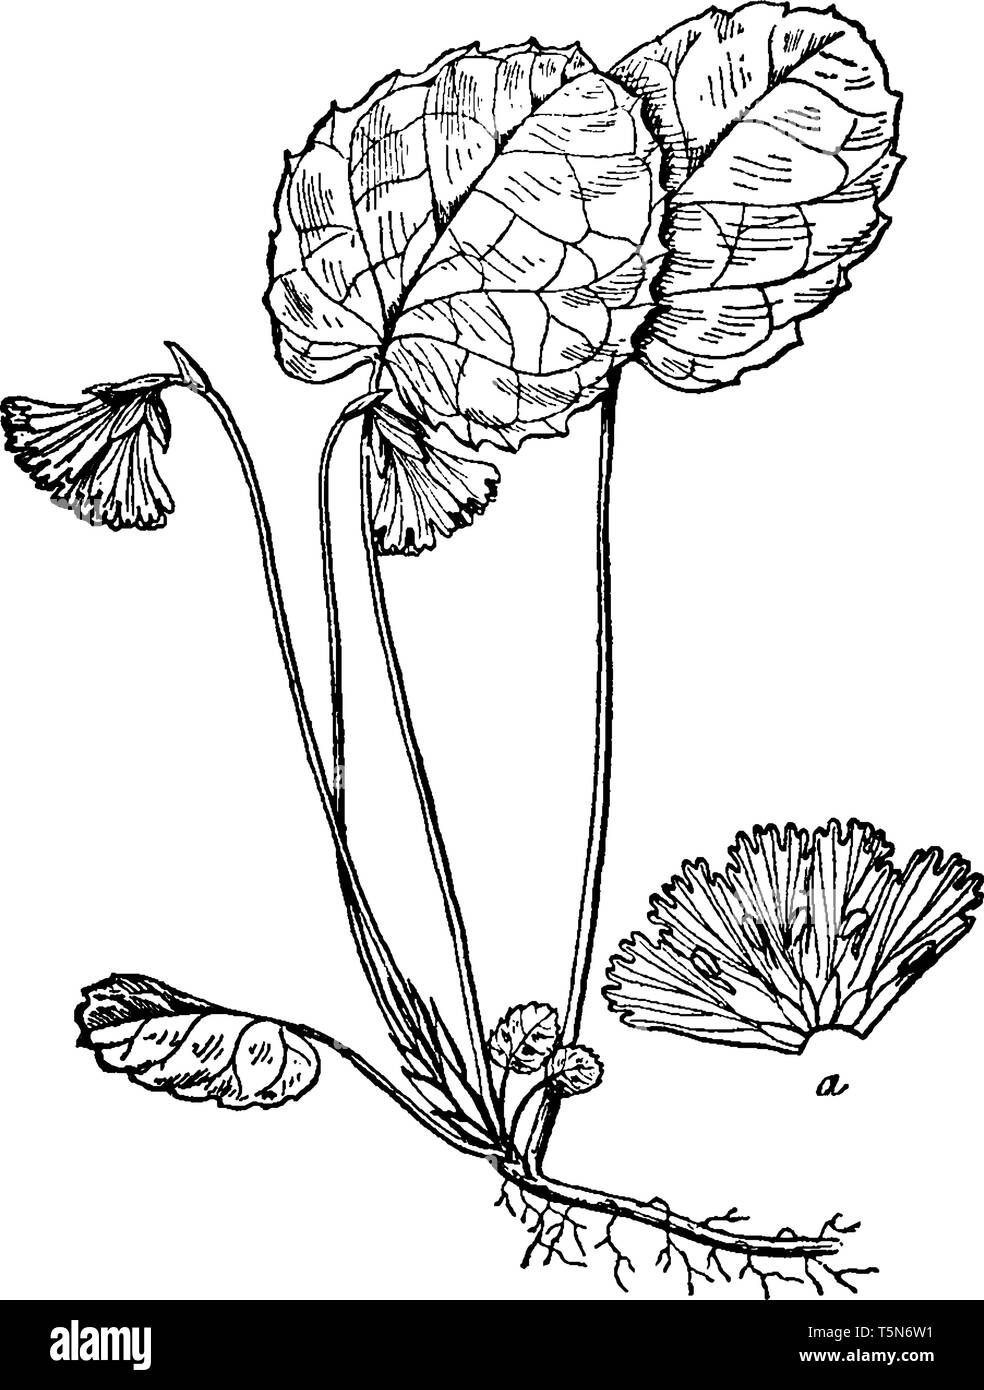 La fleur d'Oconee Bells a 5 pétales qui sont de couleur blanche à rose-mauve. La fleur sur le hoche habituellement scape. La marge des pétales peuvent être découpées Illustration de Vecteur